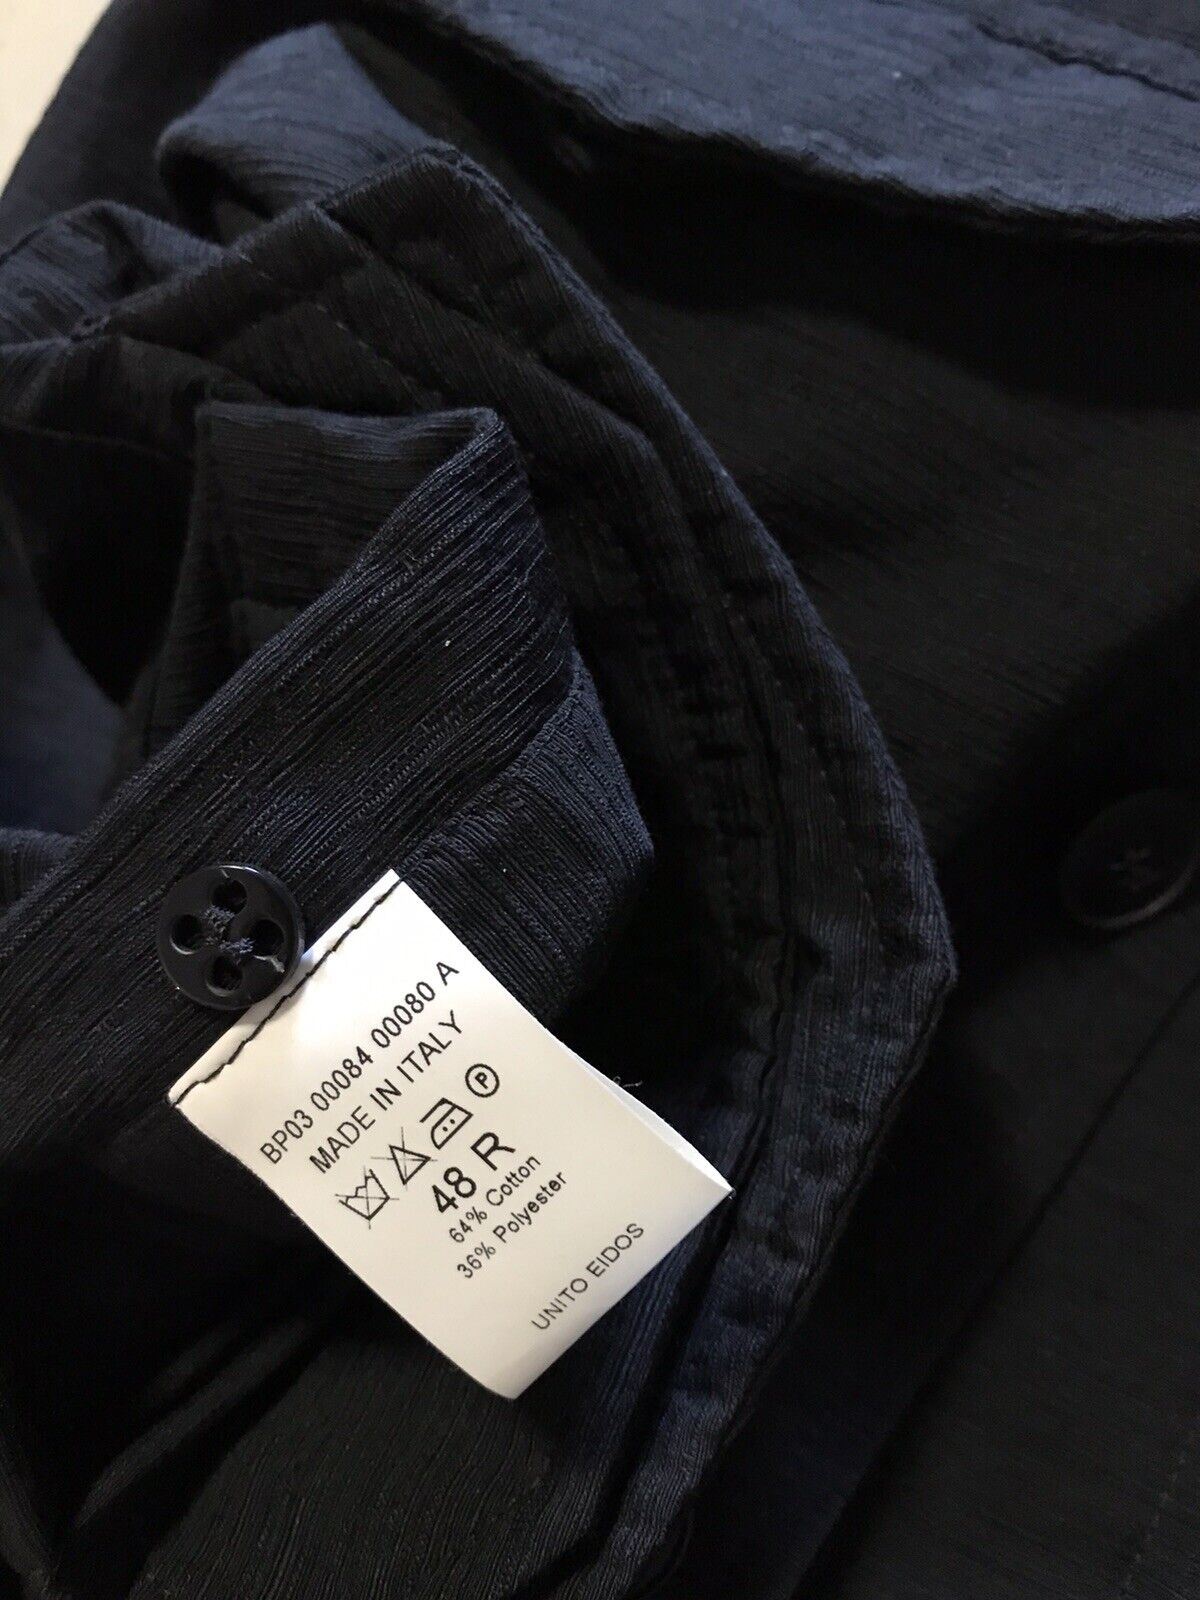 NWT $2195 Eidos Men’s Textured Stylish Jacket Coat Black 38 US ( 48 Ei ) Italy